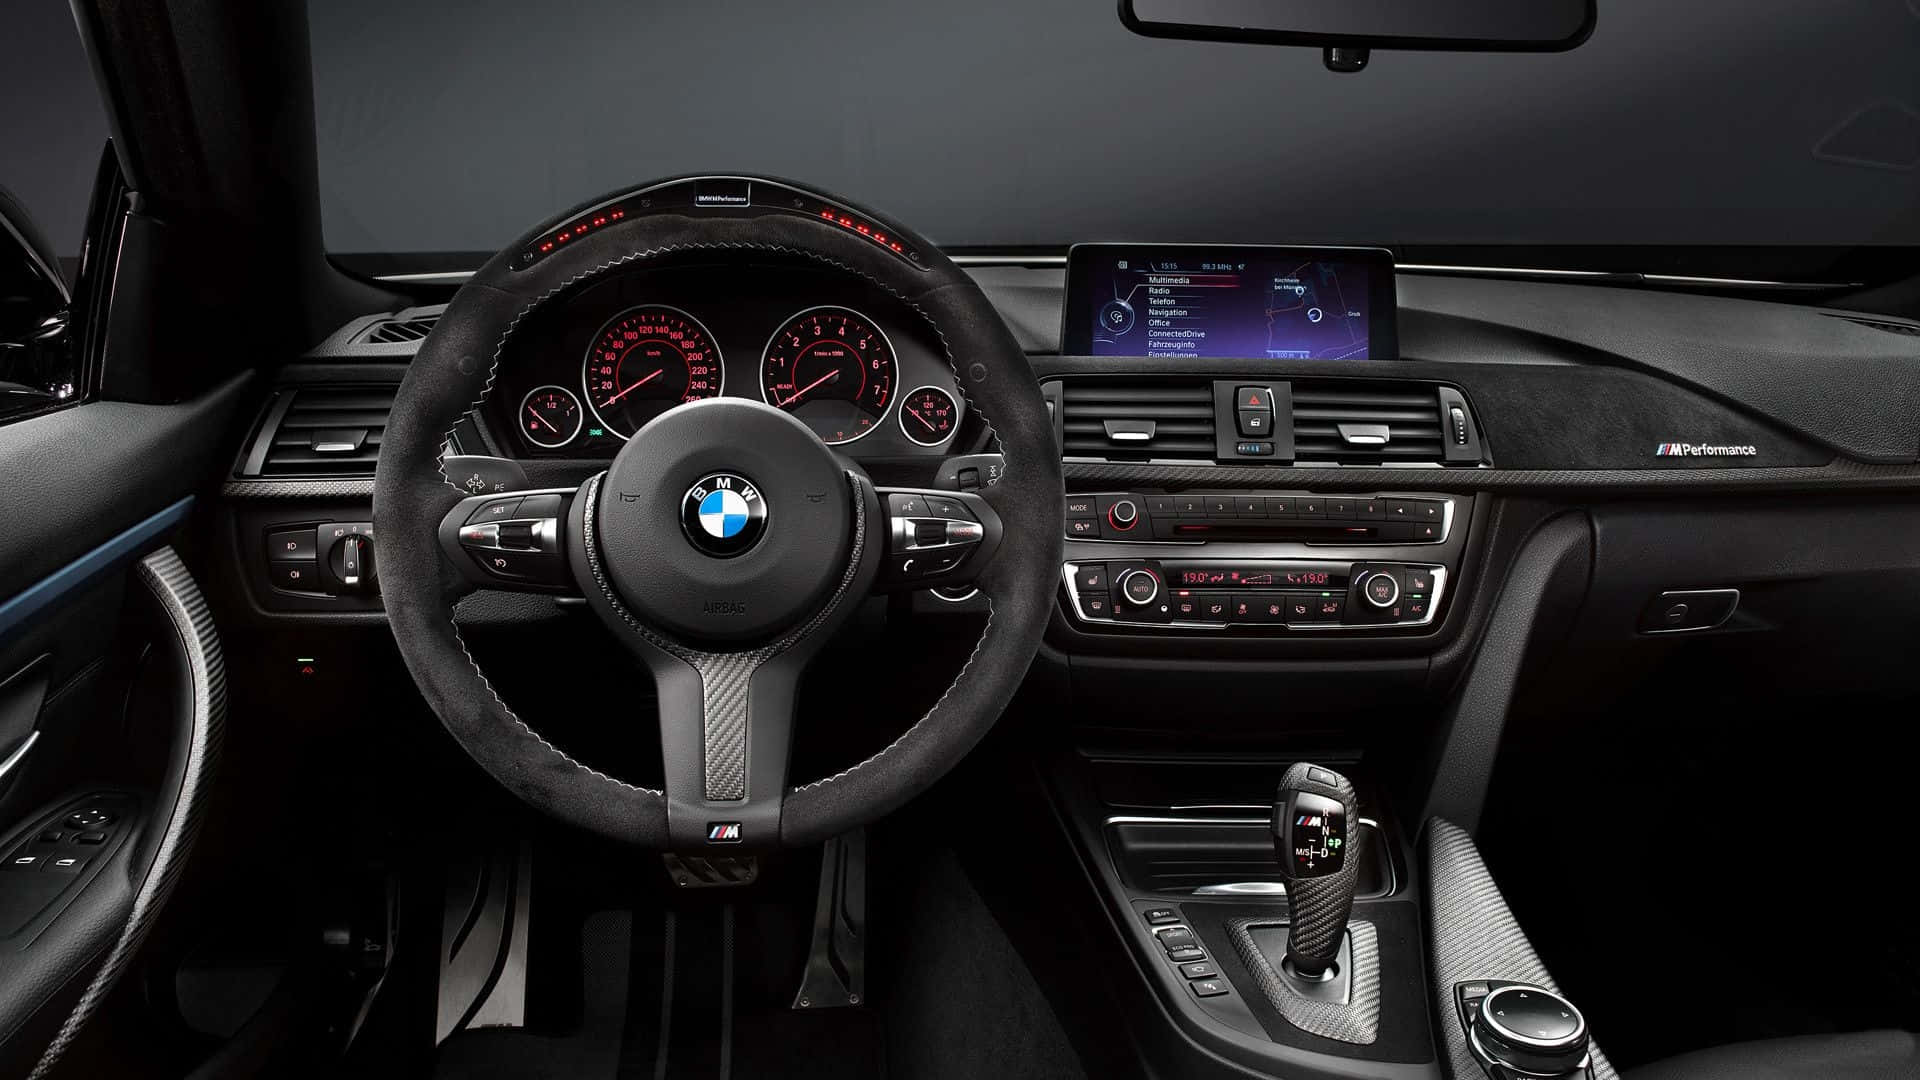 720p M Series Background BMW 4 Series Interior